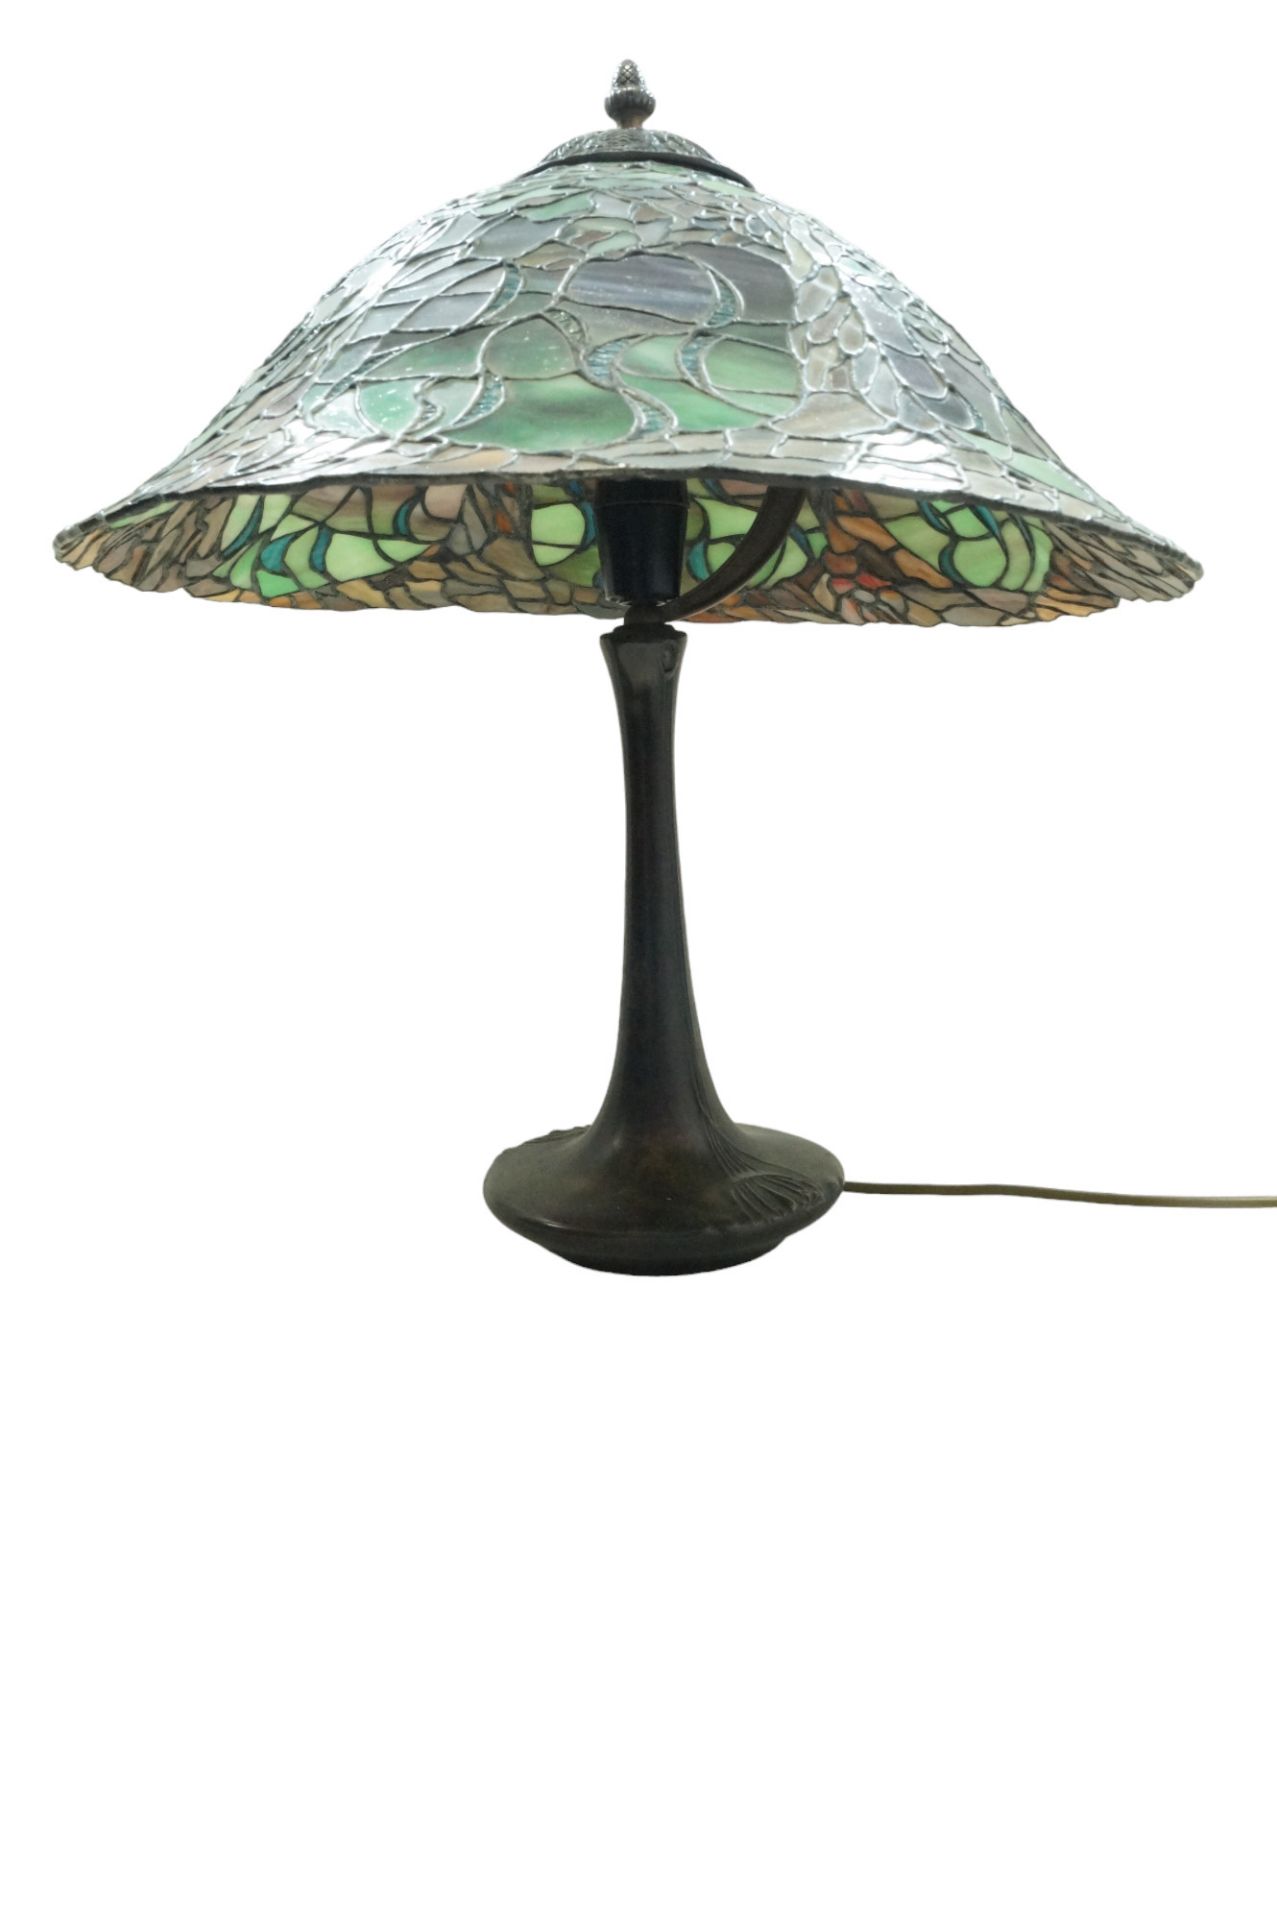 Neuzeitliche Tischlampe im Tiffany-Stil; schwerer Bronzefuß; einflammige Beleuchtung unter aufwendi - Image 3 of 5